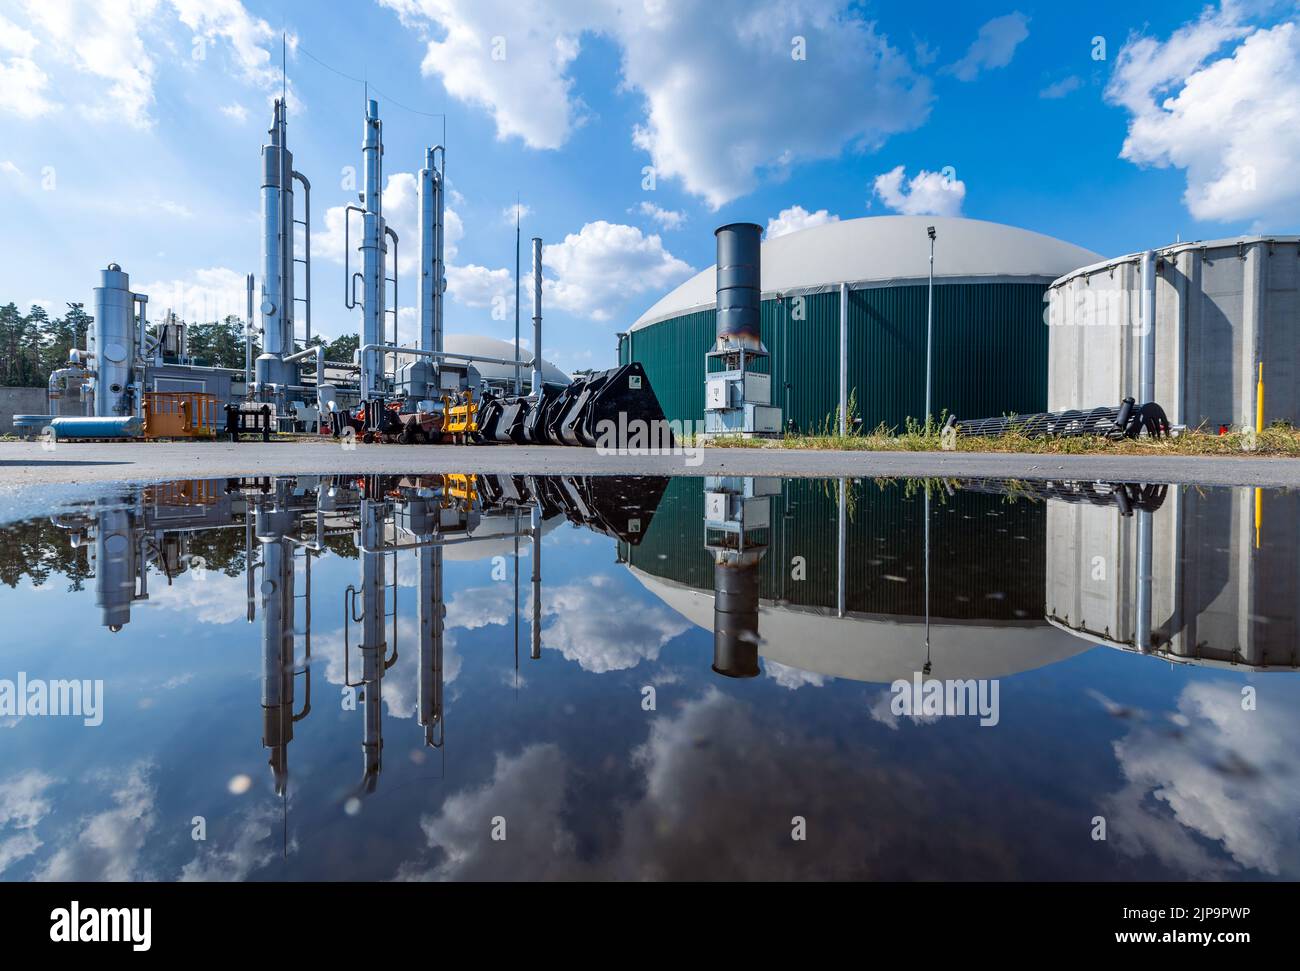 Torgelow, Deutschland. 16. August 2022. Die Biogasanlage in Torgelow spiegelt sich in einer Pfütze wider. Die Anlage versorgt 15.000 Einwohner der Stadt Torgelow. Die Anlage, die bisher aus sechs Gasspeichertanks des Unternehmens Mele Biogas bestand, wird bis Herbst 2023 ihre Kapazität verdoppeln. Hier soll nach Angaben des Landesverbands für Erneuerbare Energien Mecklenburg-Vorpommern ein Energievolumen von mehr als 100 Millionen Kilowattstunden pro Jahr produziert und auch in das Erdgasnetz eingespeist werden. Quelle: Jens Büttner/dpa/Alamy Live News Stockfoto